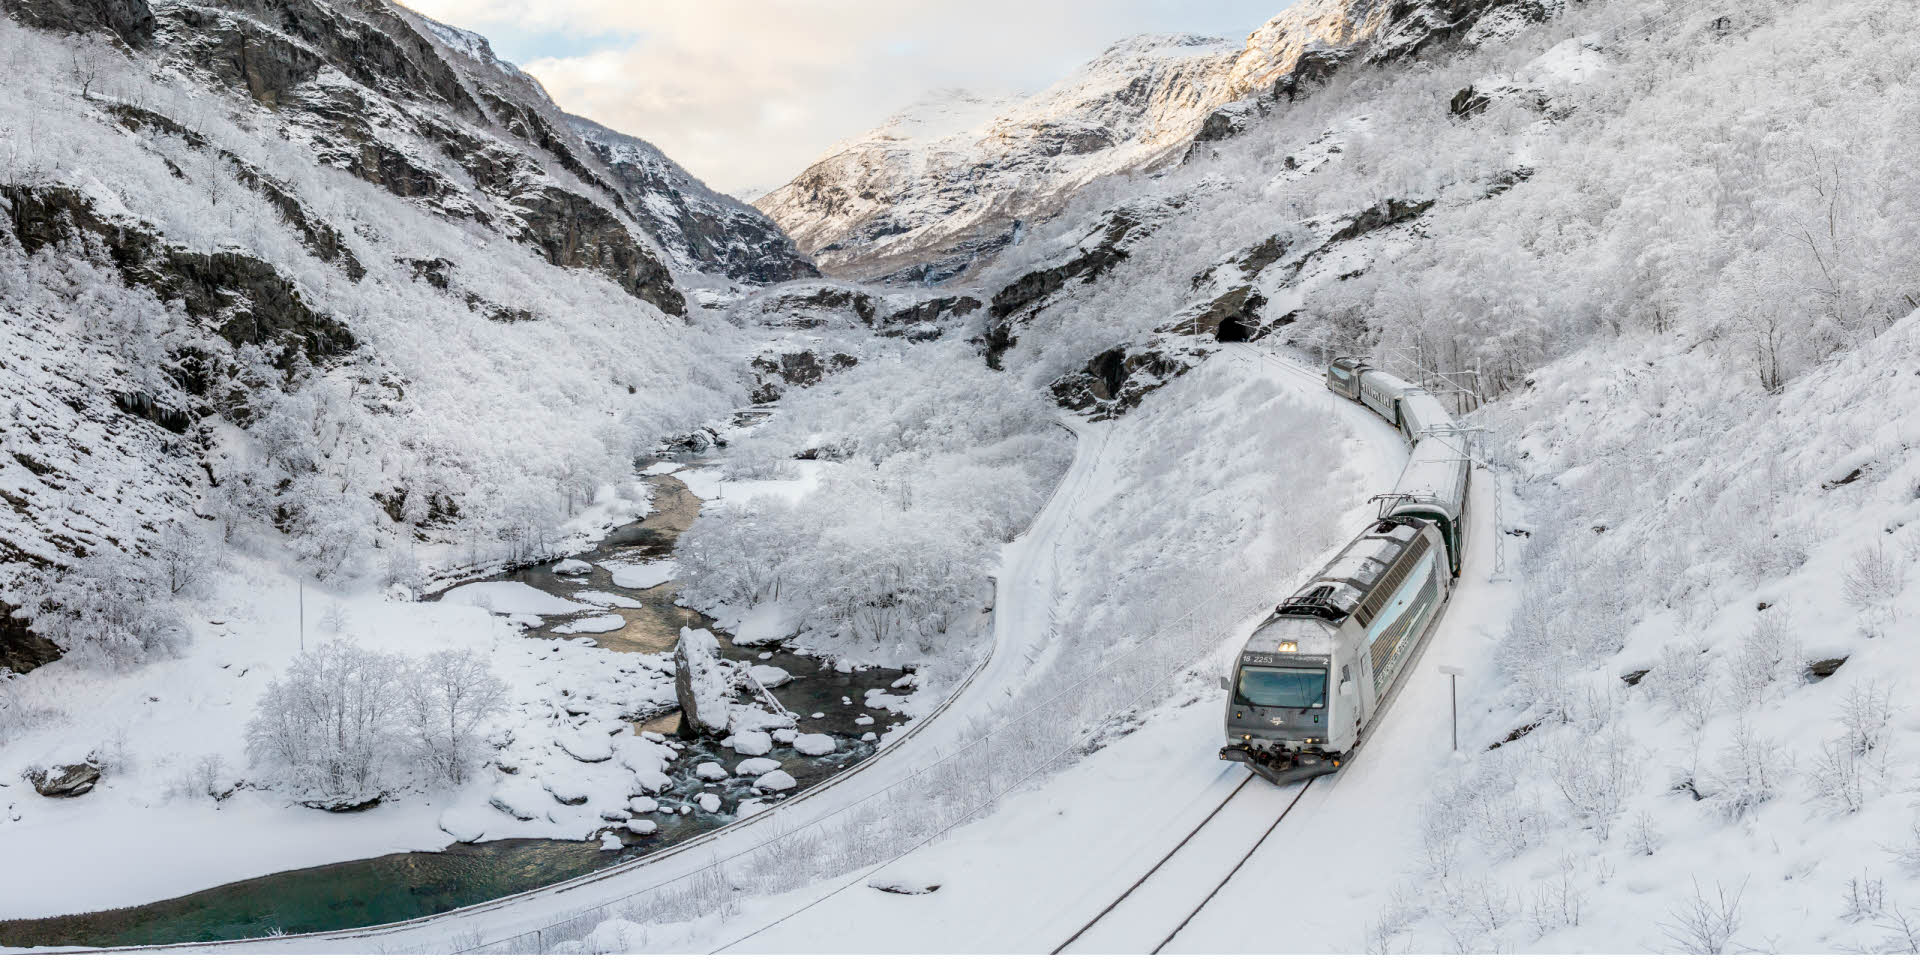 Flam 山谷的冬日景观，火车沿着蜿蜒的河流向下流驶去。